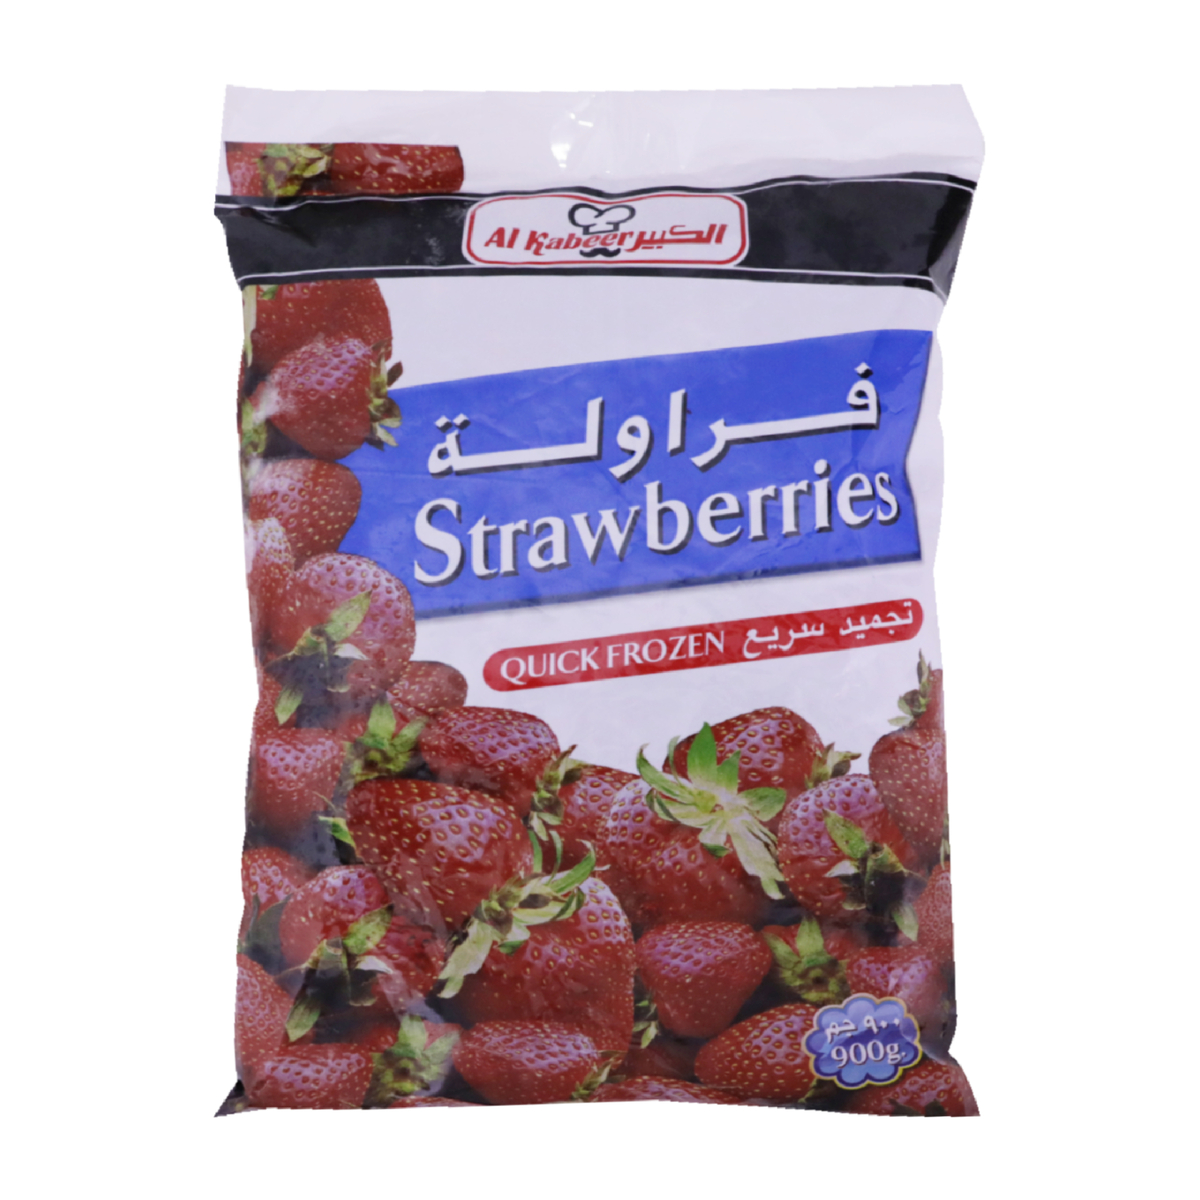 اشتري قم بشراء الكبير فراولة مجمدة 900 جم Online at Best Price من الموقع - من لولو هايبر ماركت Fruits في السعودية